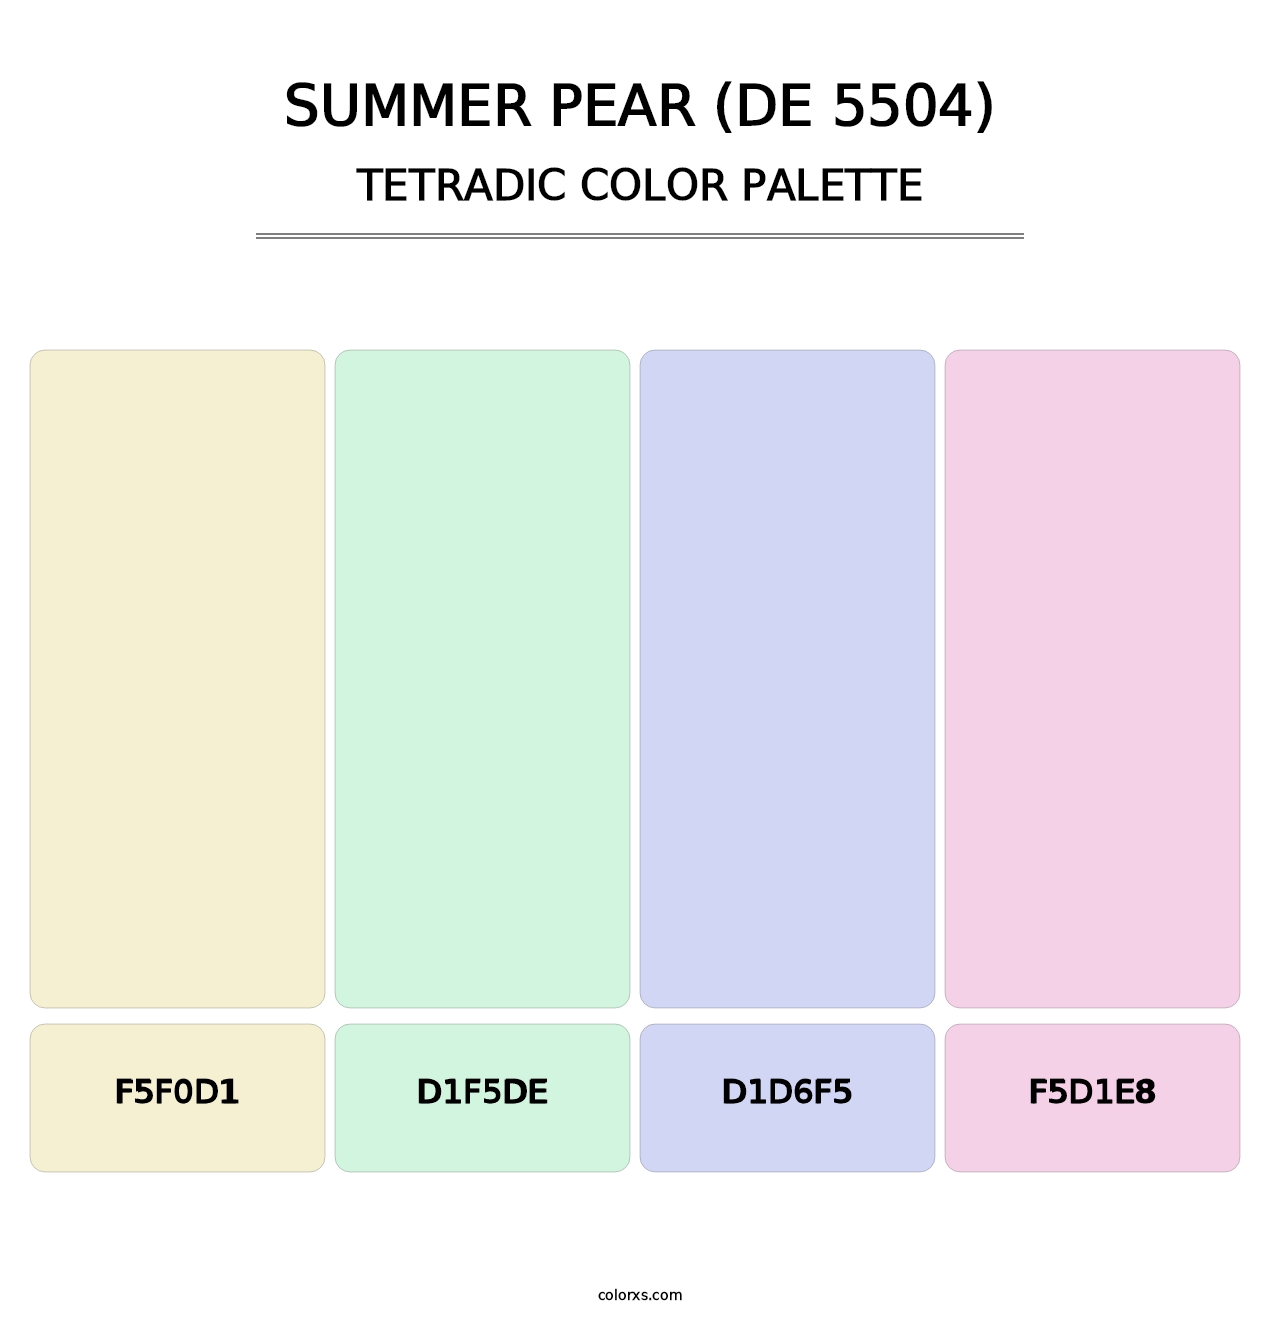 Summer Pear (DE 5504) - Tetradic Color Palette